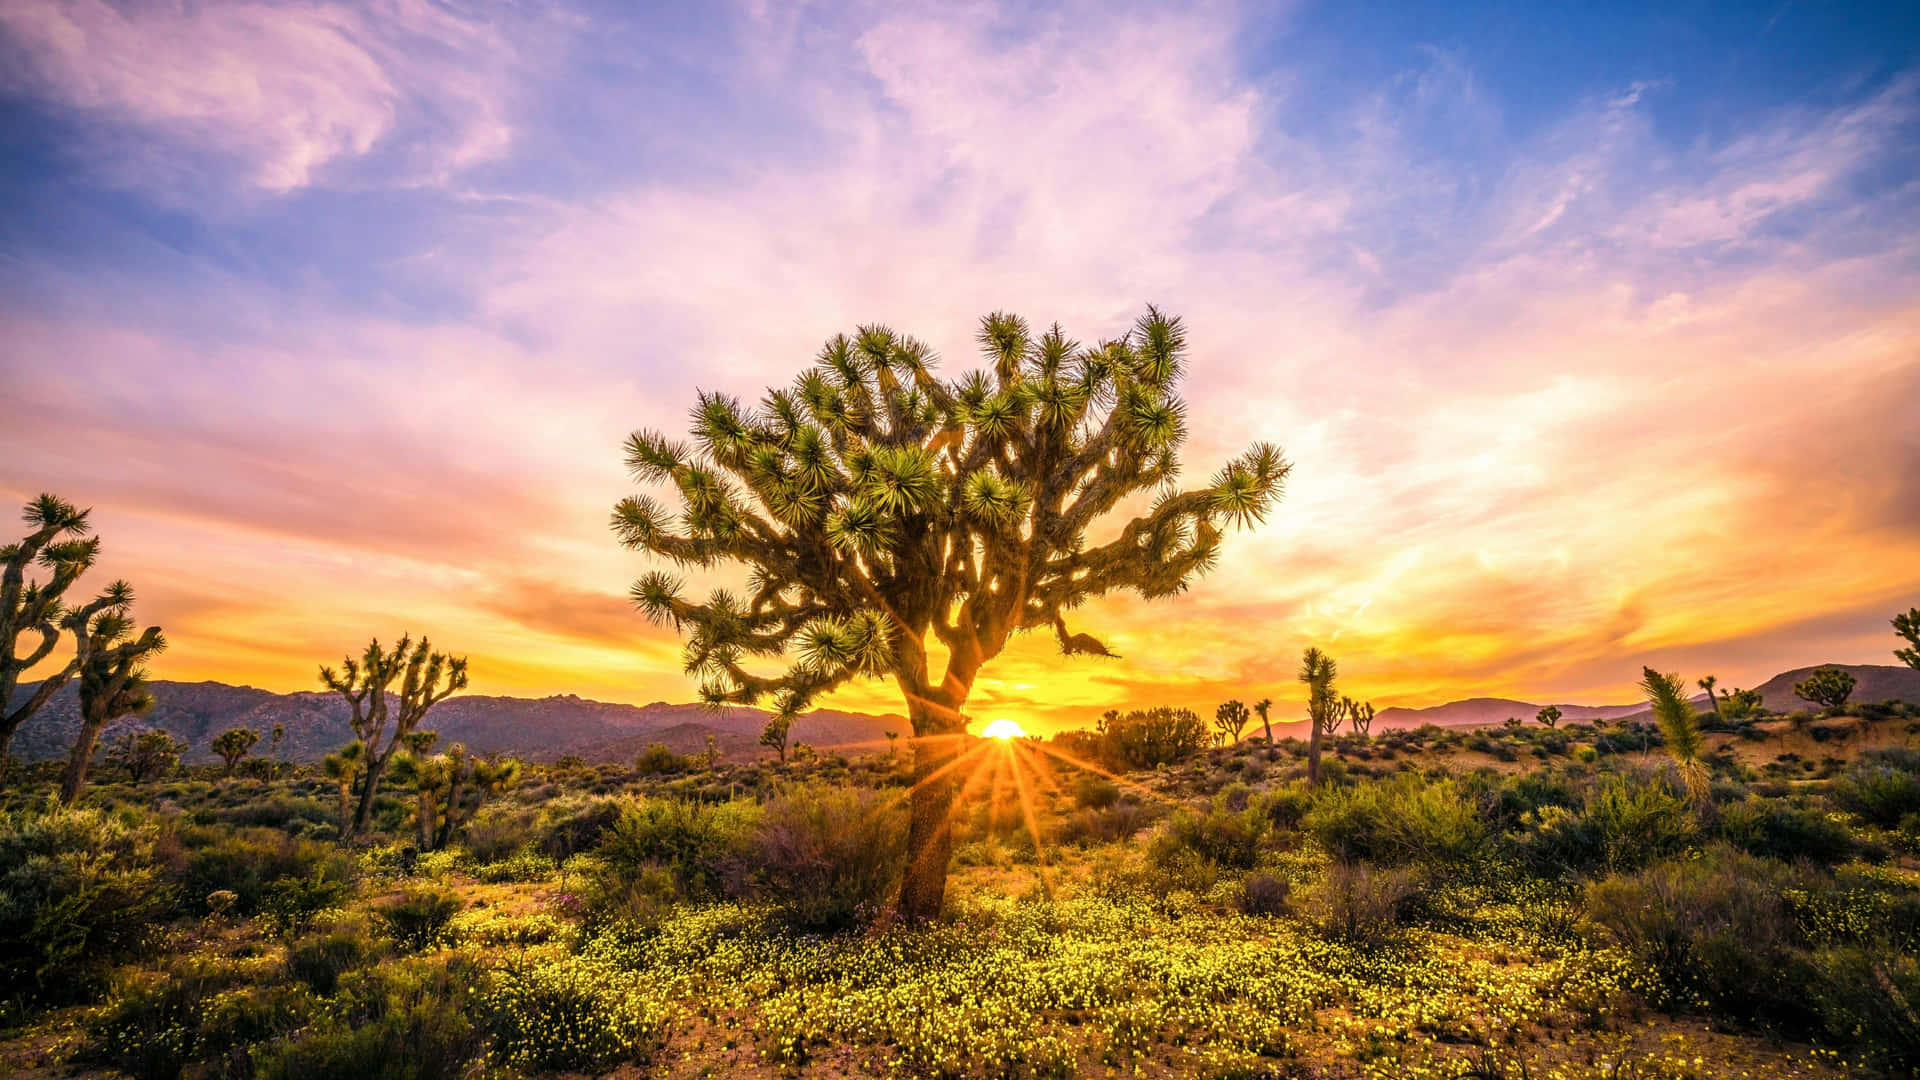 Joshua Tree Sunset billeder løfter dit humør.